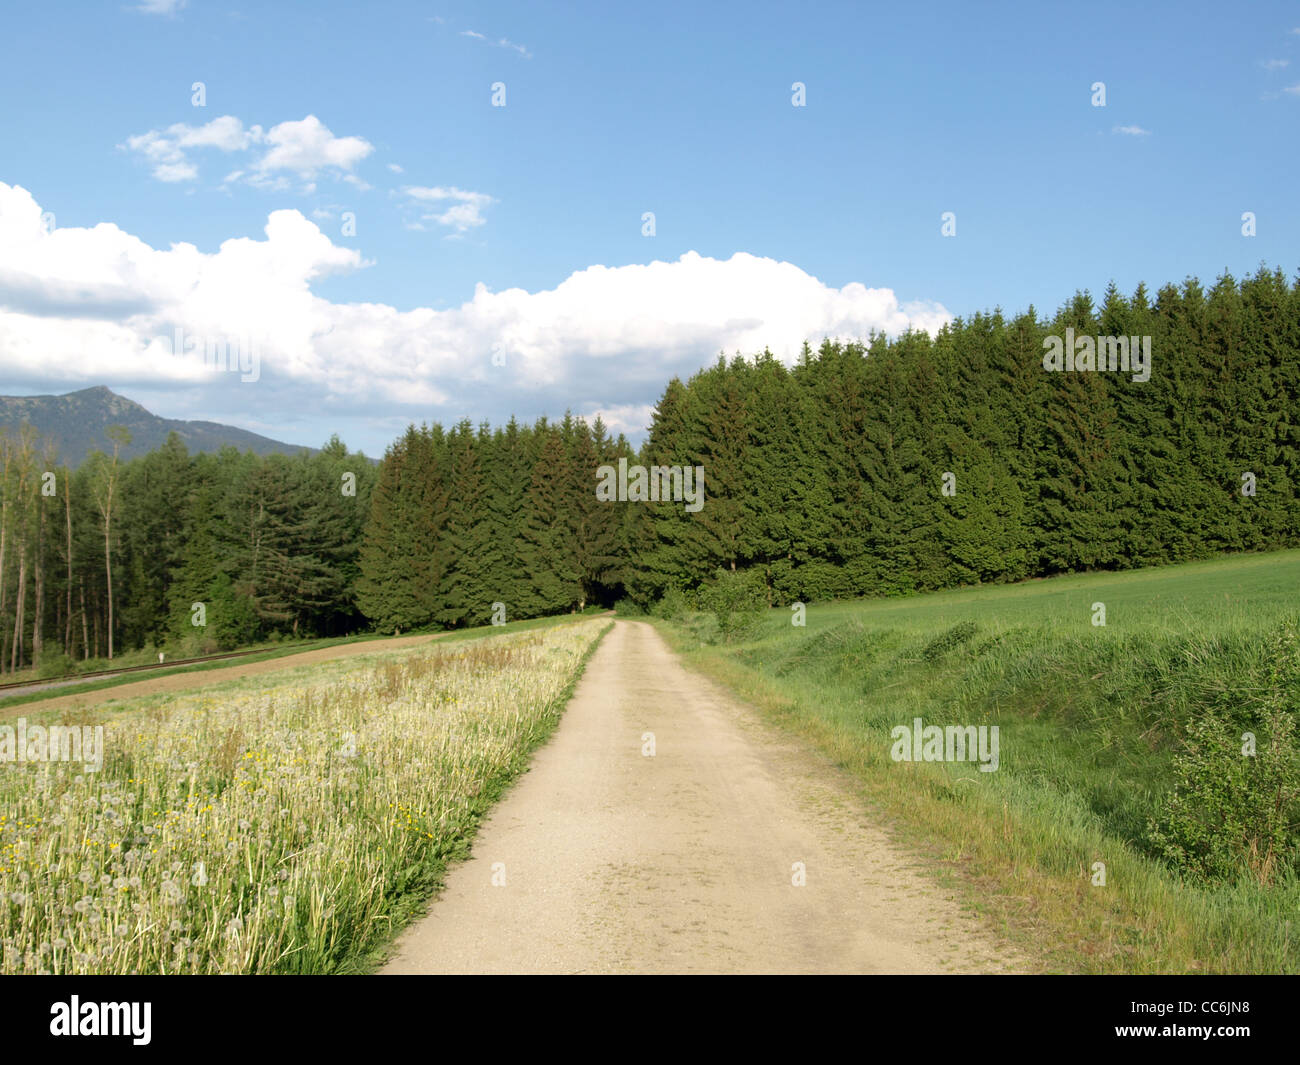 dirt road between meadows and wood with blue sky and clouds / Weg zwischen Wiesen und Wald, blauer Himmel und Wolken Stock Photo